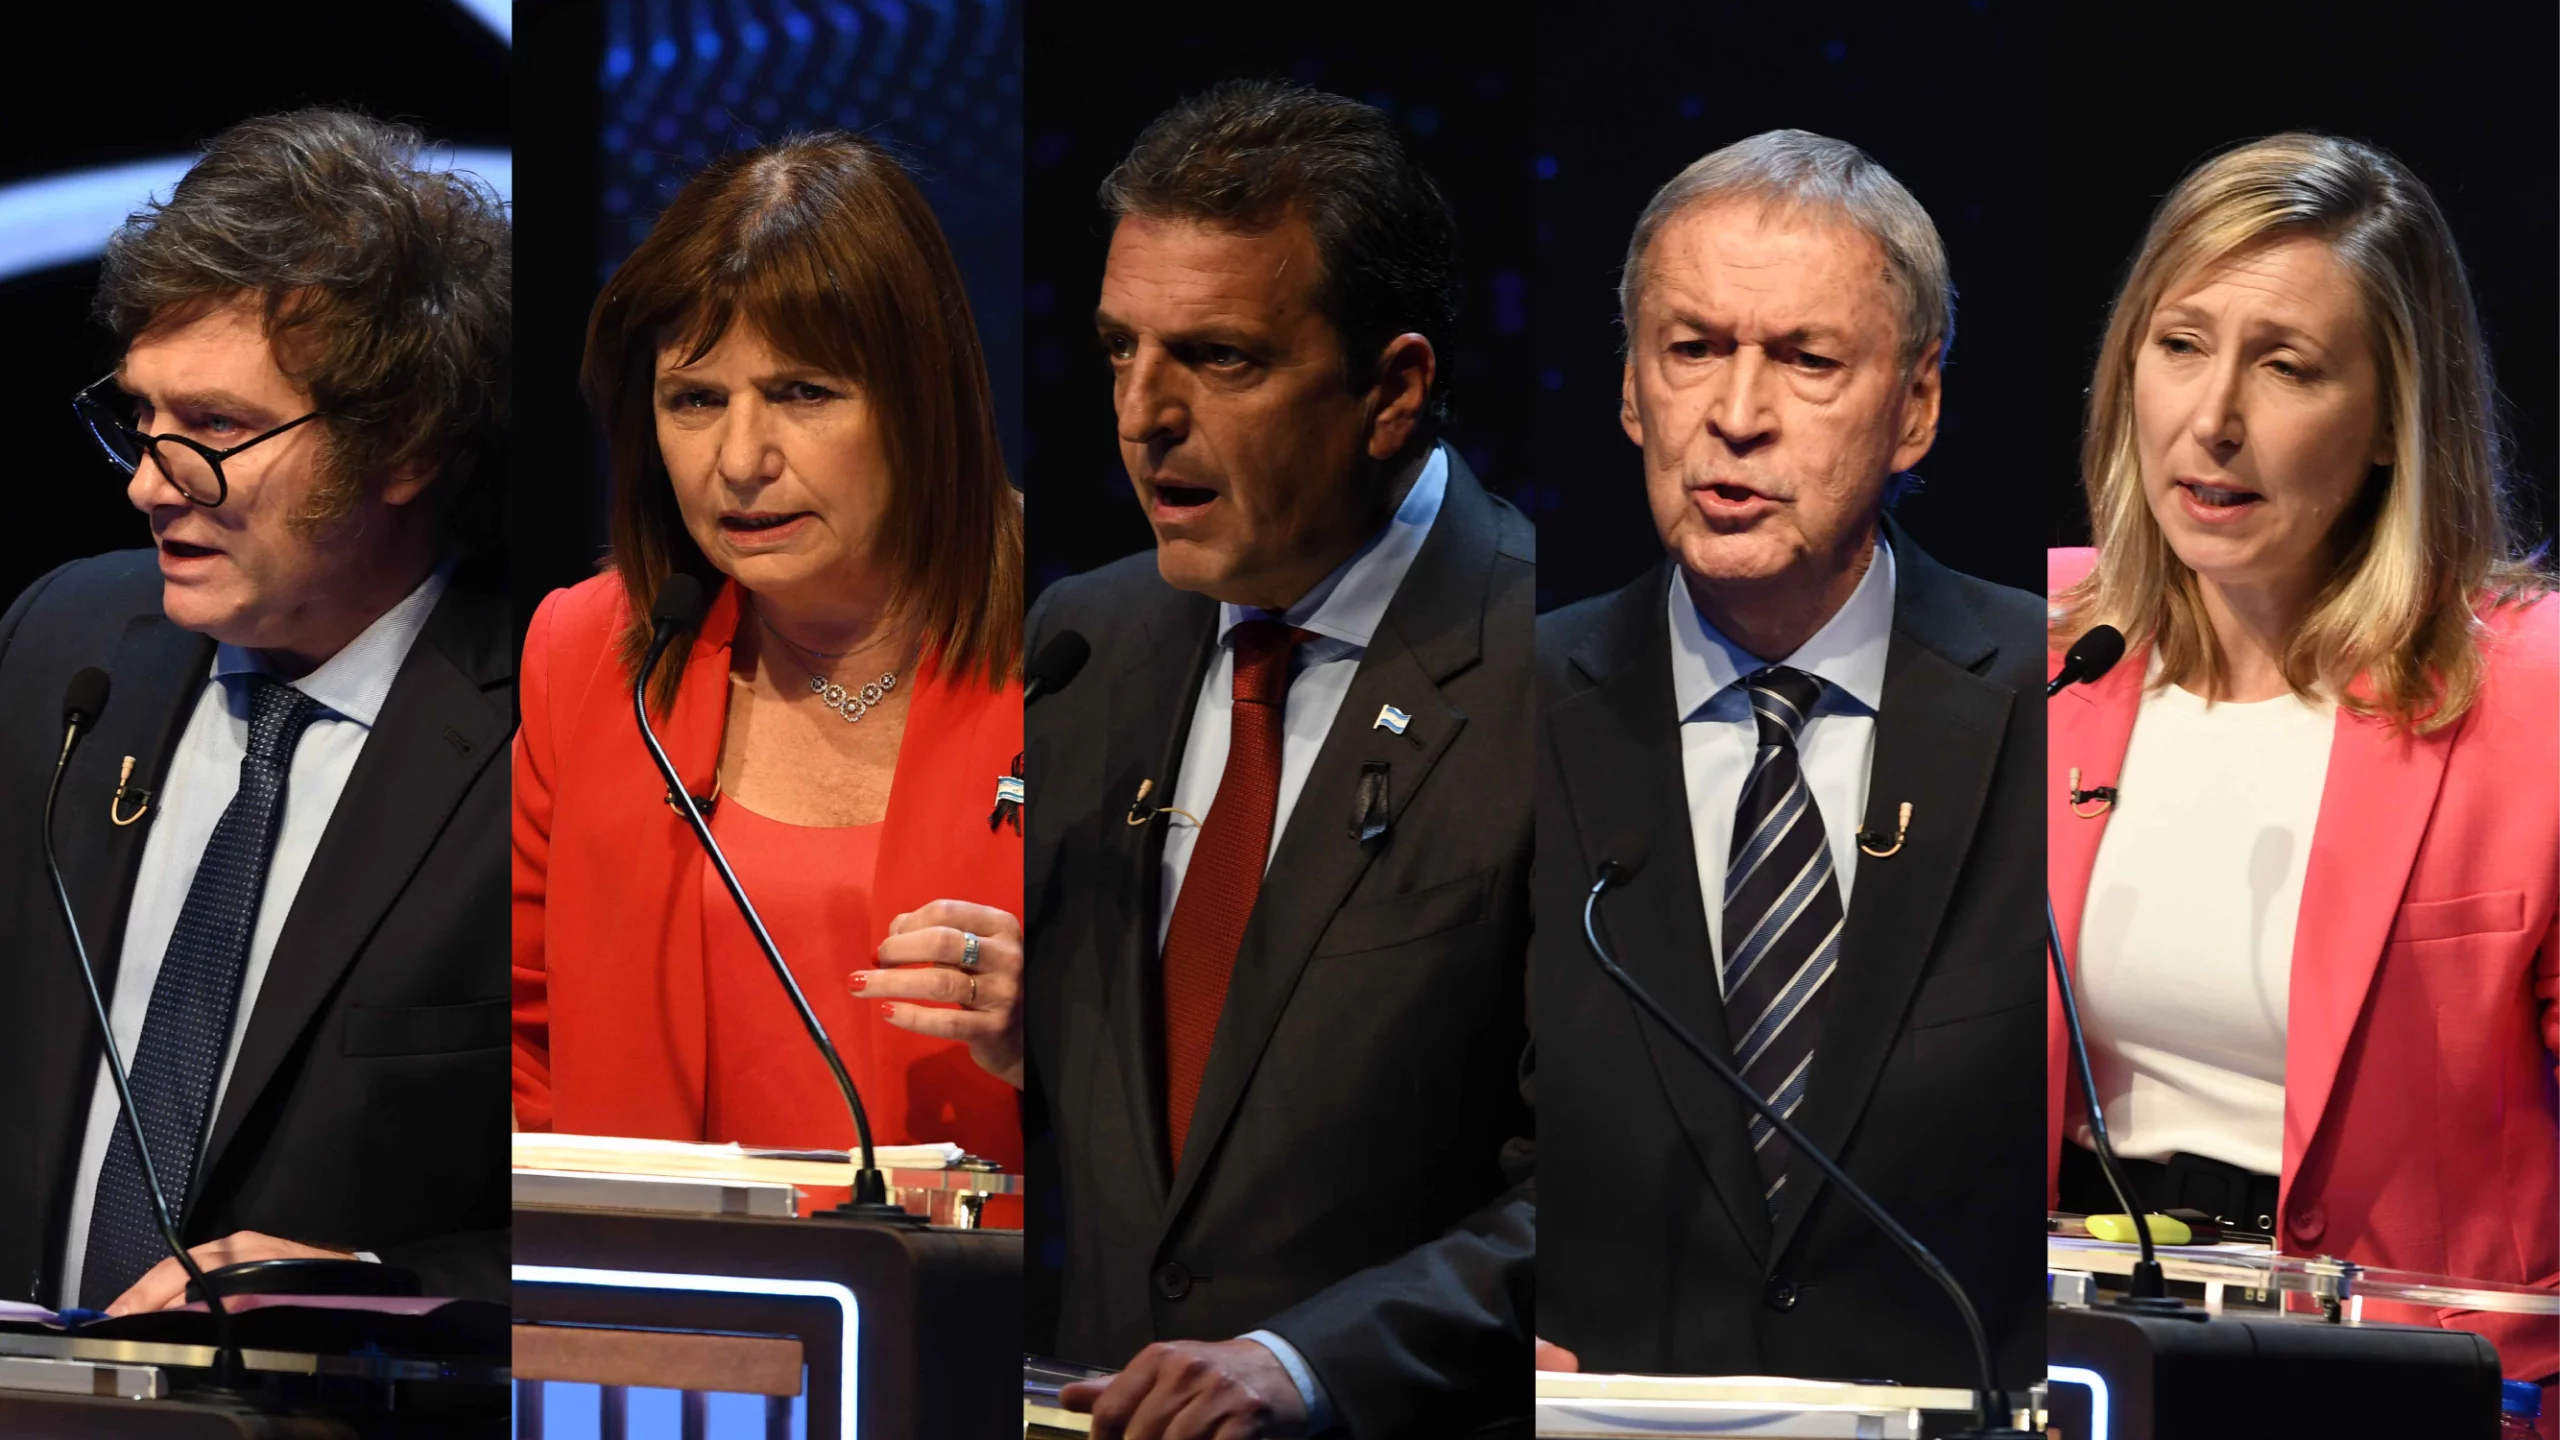 Quiénes son los 5 candidatos presidenciales que compiten en las elecciones de hoy